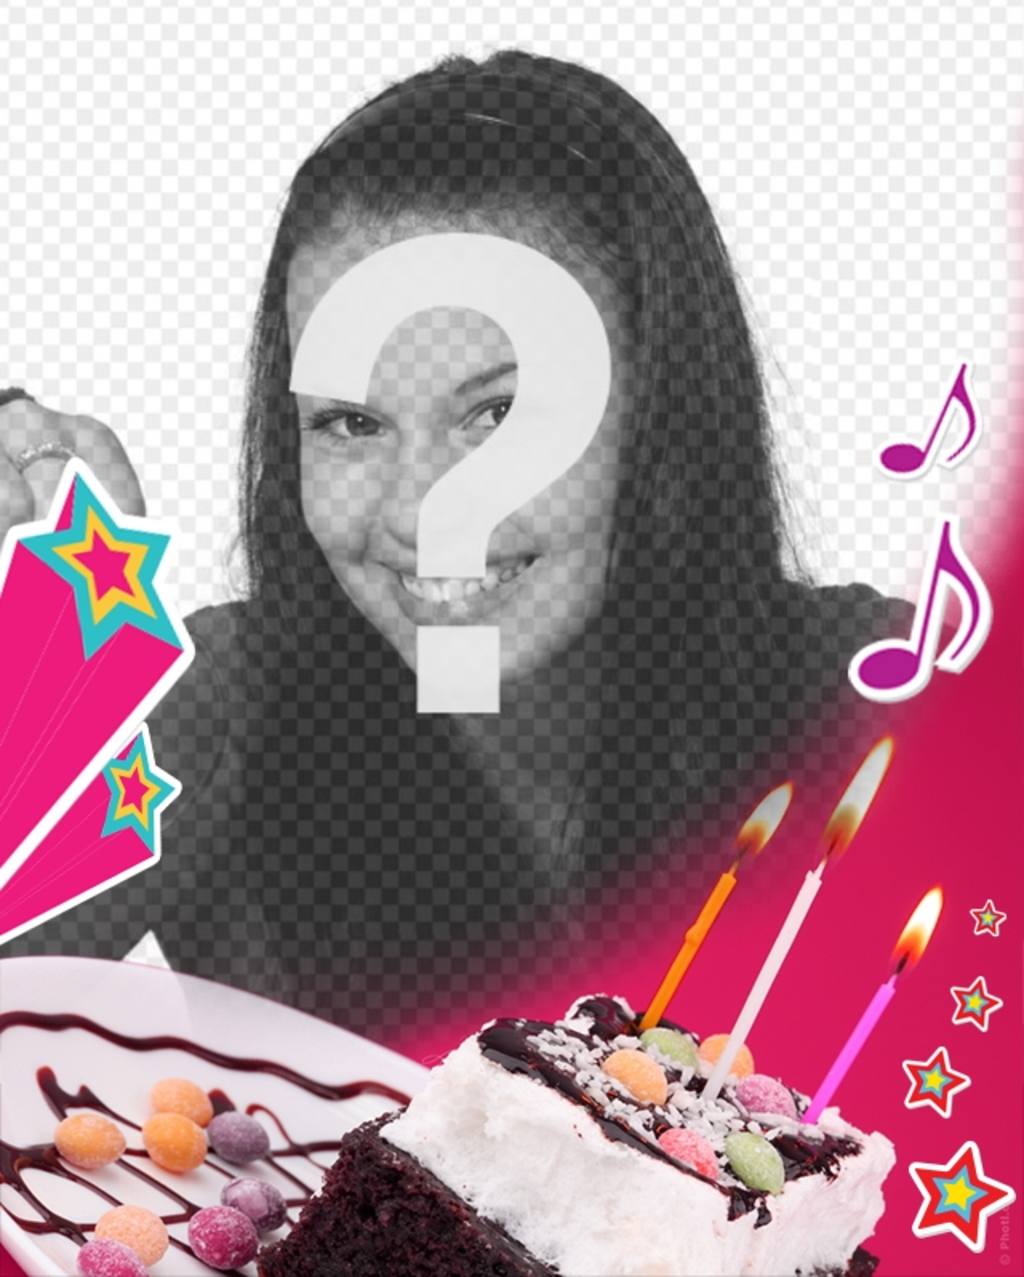 Geburtstagskarte, wo Sie ein Bild hochladen mit einem rosa Hintergrund, ein Kuchen mit Kerzen, Sternen und..